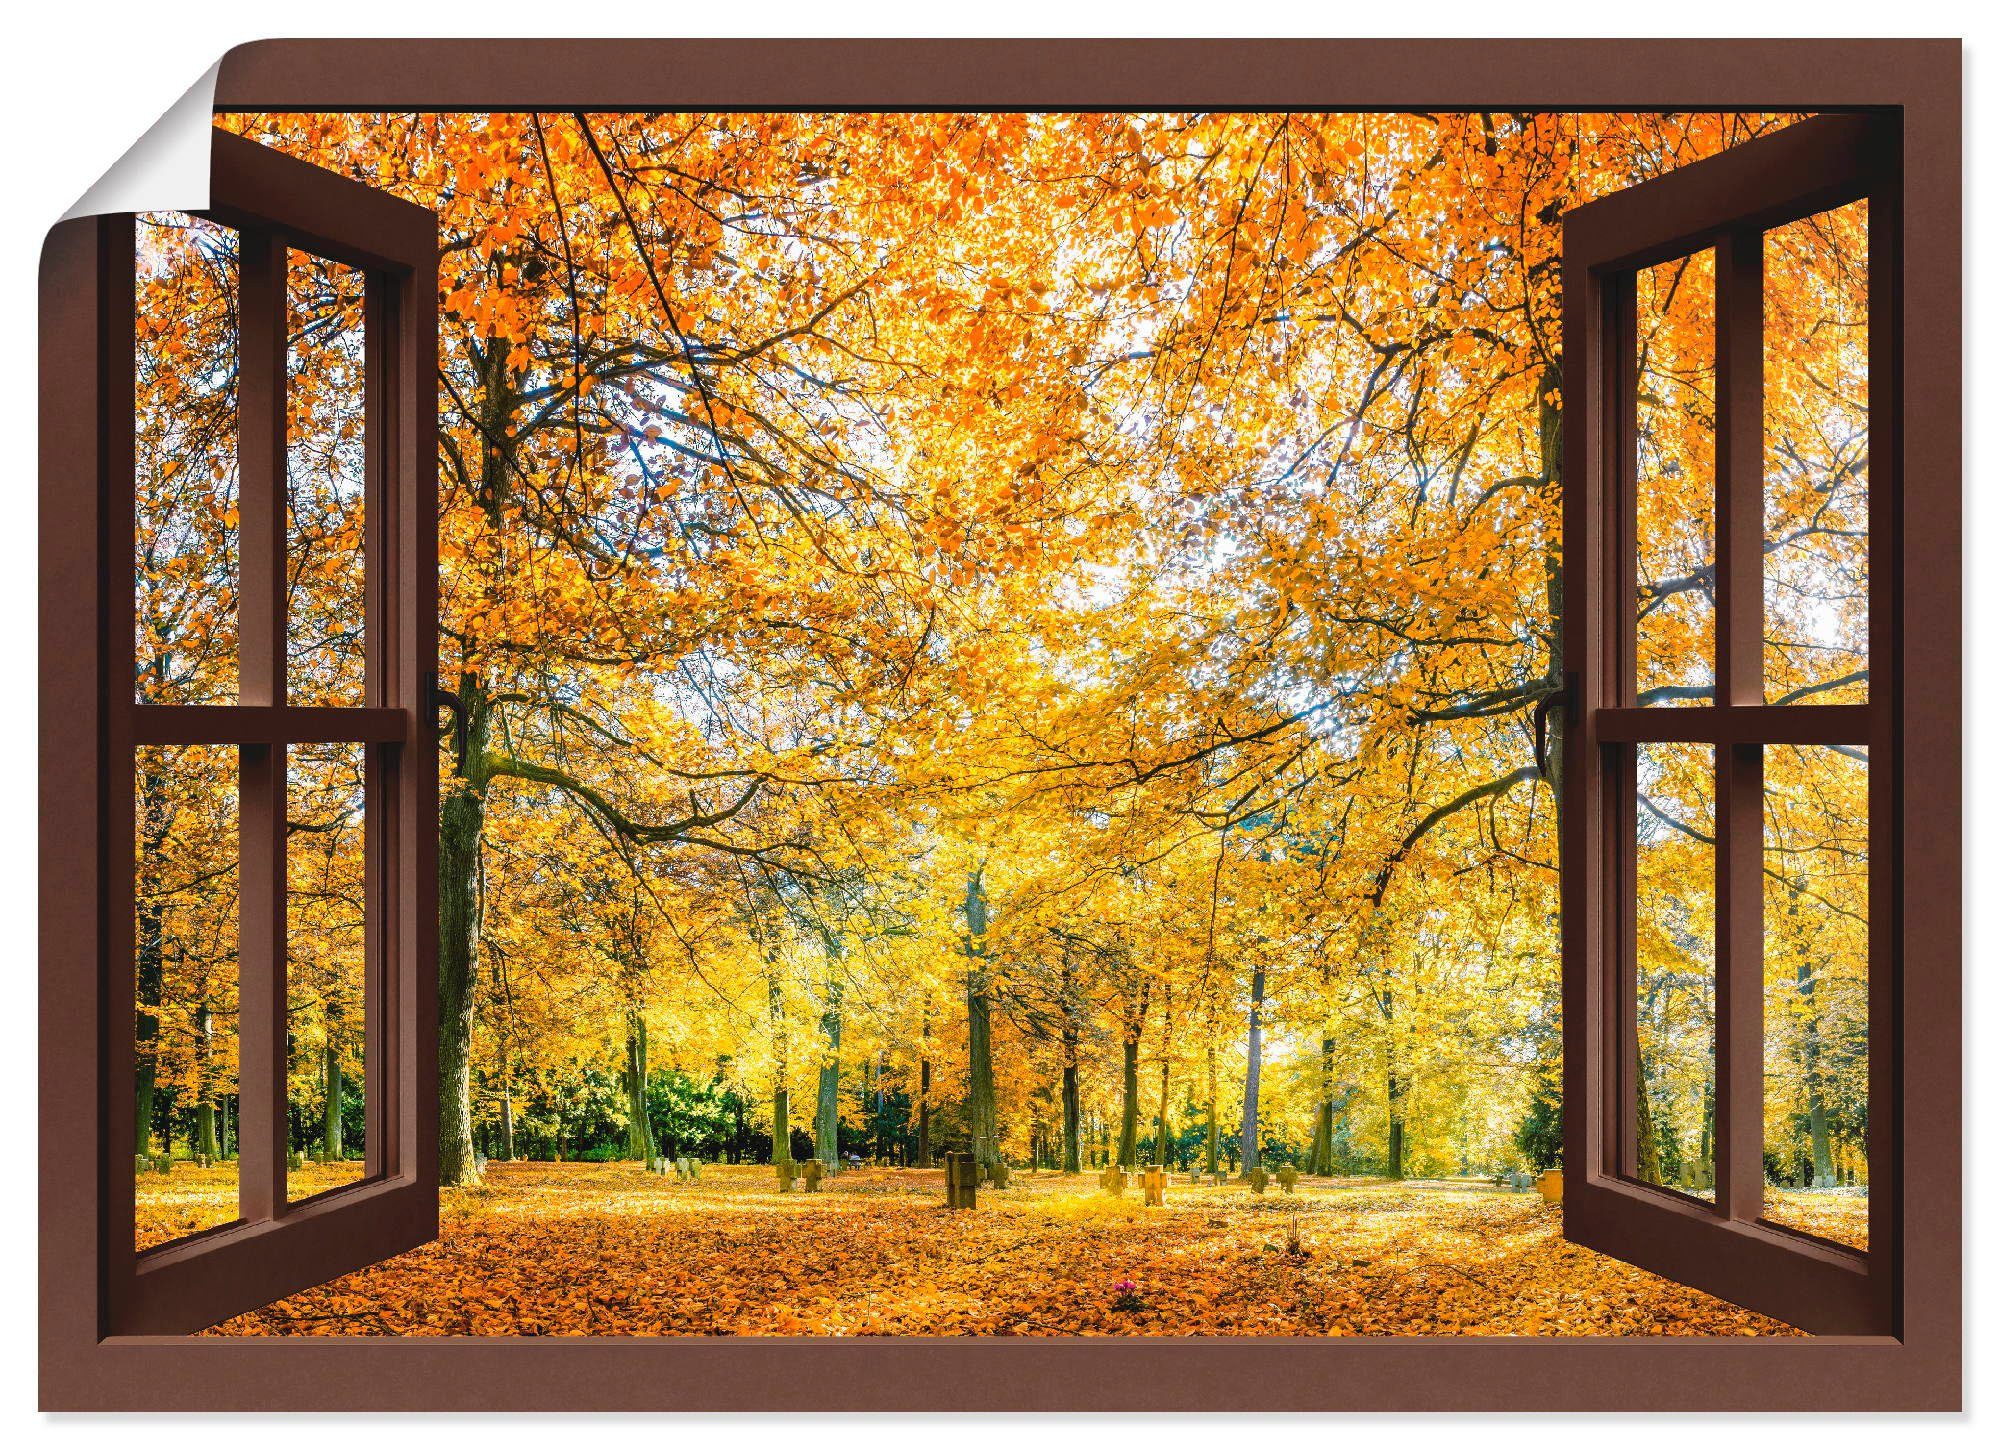 Artland Artprint Blik uit het venster - herfstbos panorama in vele afmetingen & productsoorten -artprint op linnen, poster, muursticker / wandfolie ook geschikt voor de badkamer (1